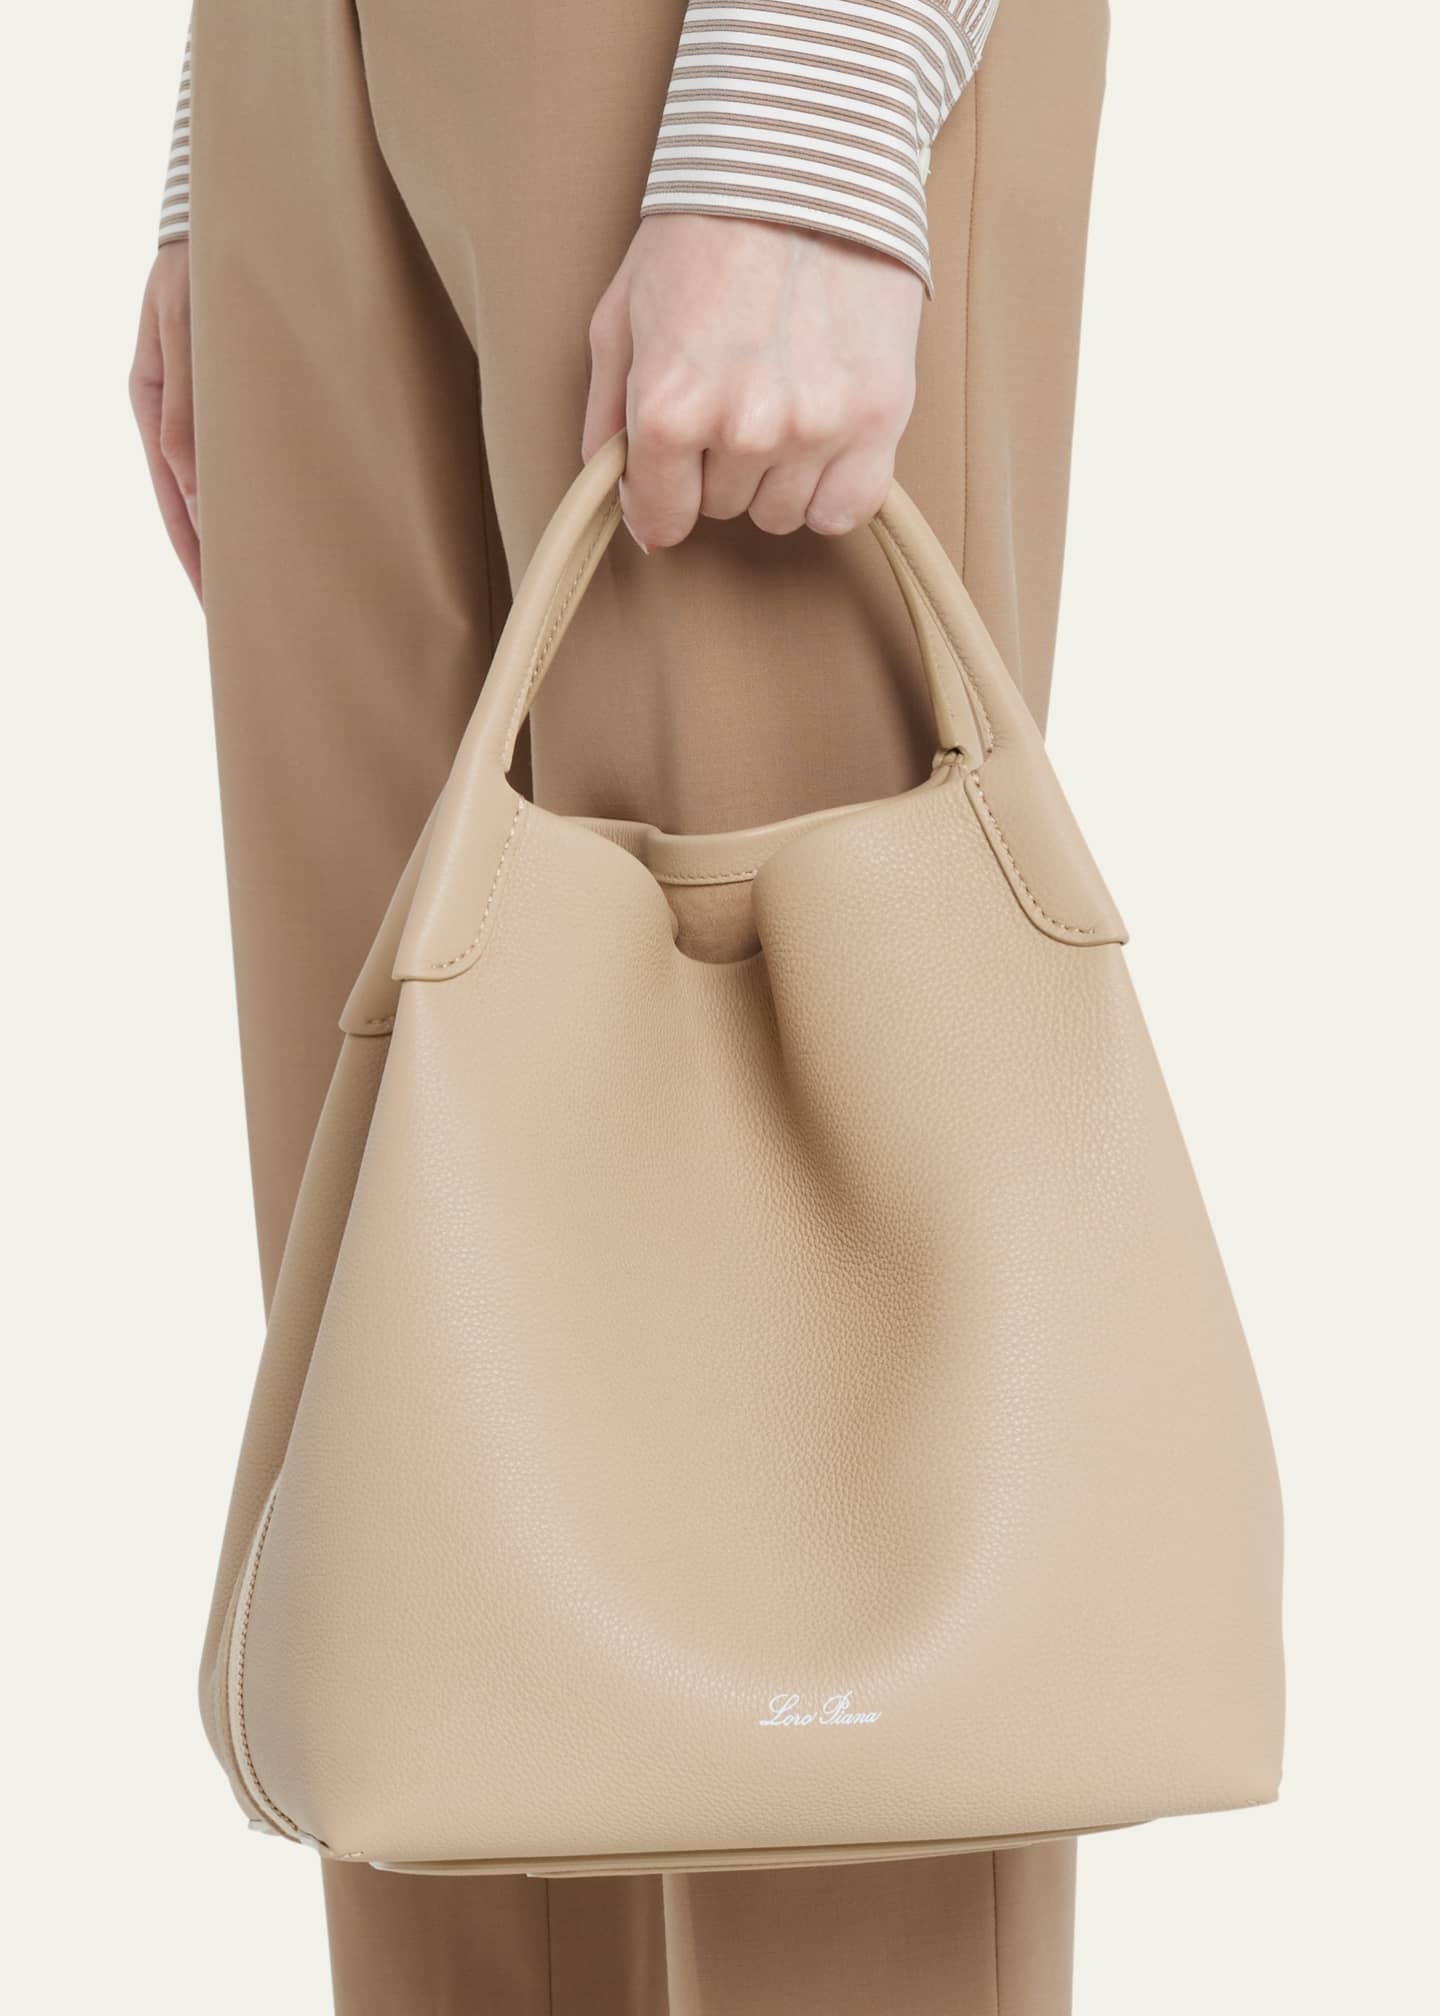 Loro Piana Bags & Handbags for Women for sale